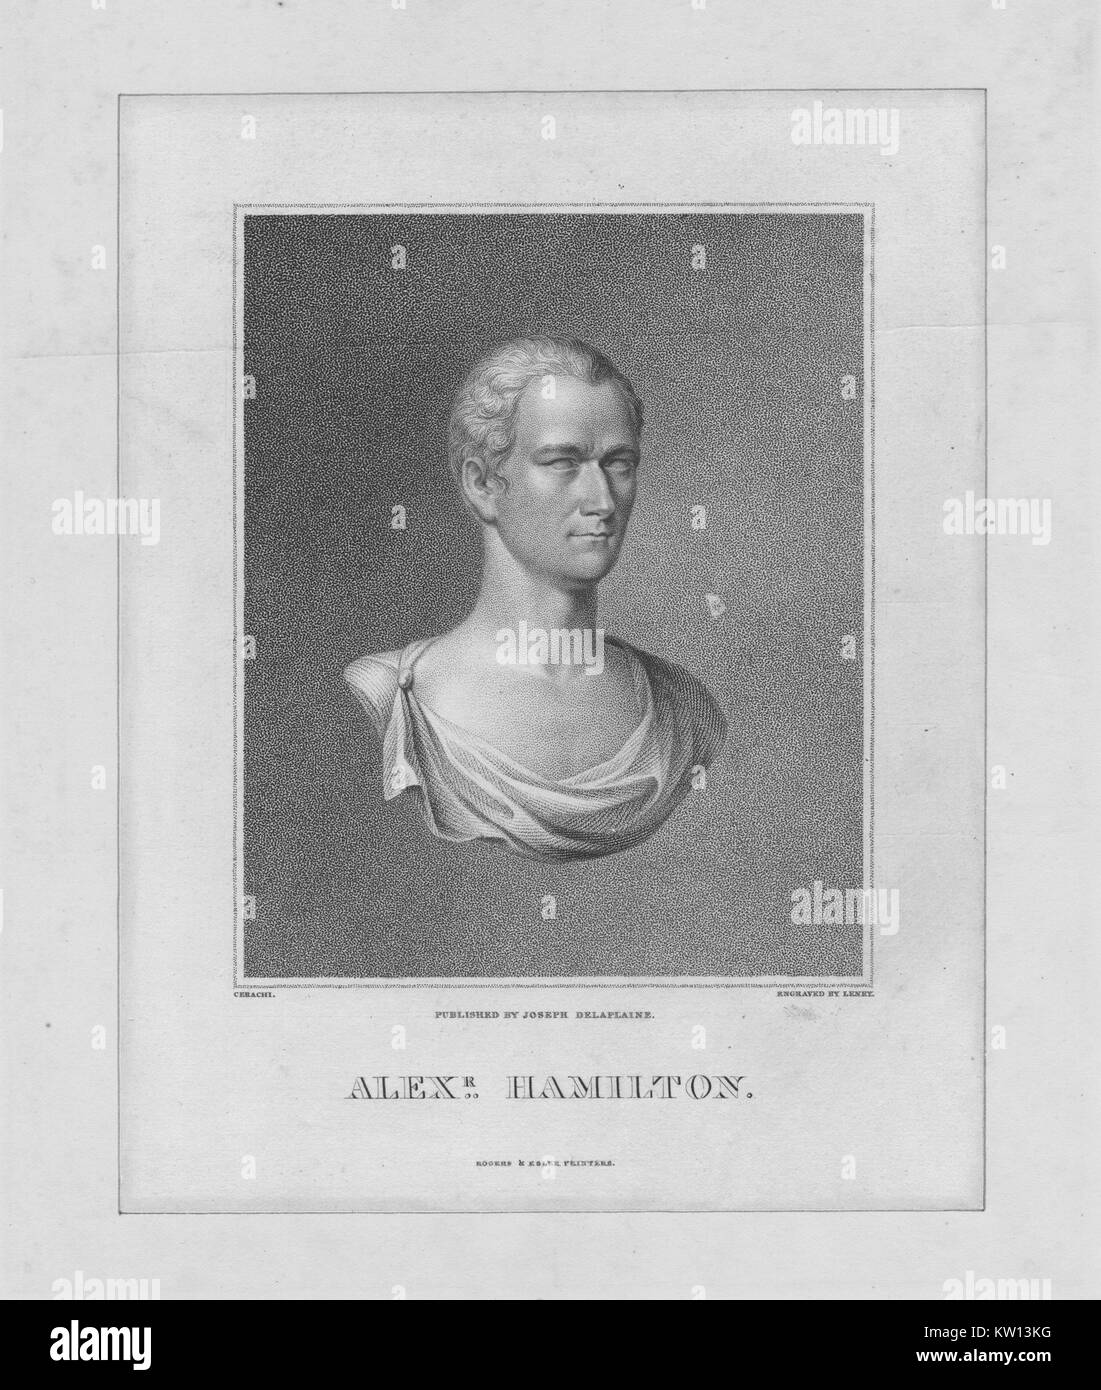 Un rouleau (gravure d'un buste de Alexander Hamilton, il a été l'un des pères fondateurs des États-Unis d'Amérique, a été chef de l'aide du personnel de George Washington pendant la guerre d'Indépendance américaine et fut le premier secrétaire au Trésor des États-Unis, 1843. À partir de la Bibliothèque publique de New York. Banque D'Images